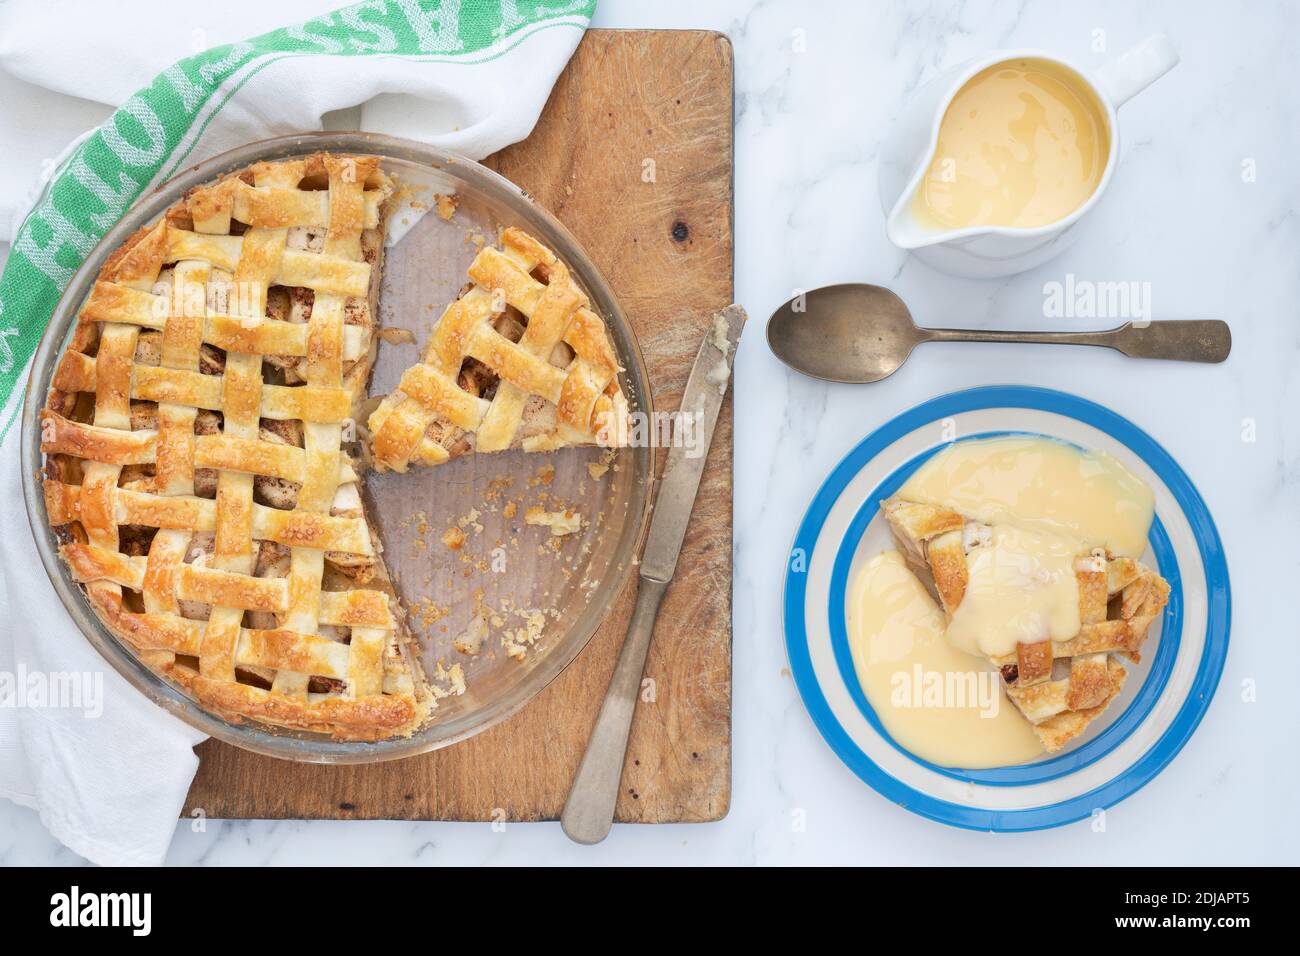 Tarte aux pommes maison avec une pâte à tartiquer et une crème anglaise Banque D'Images